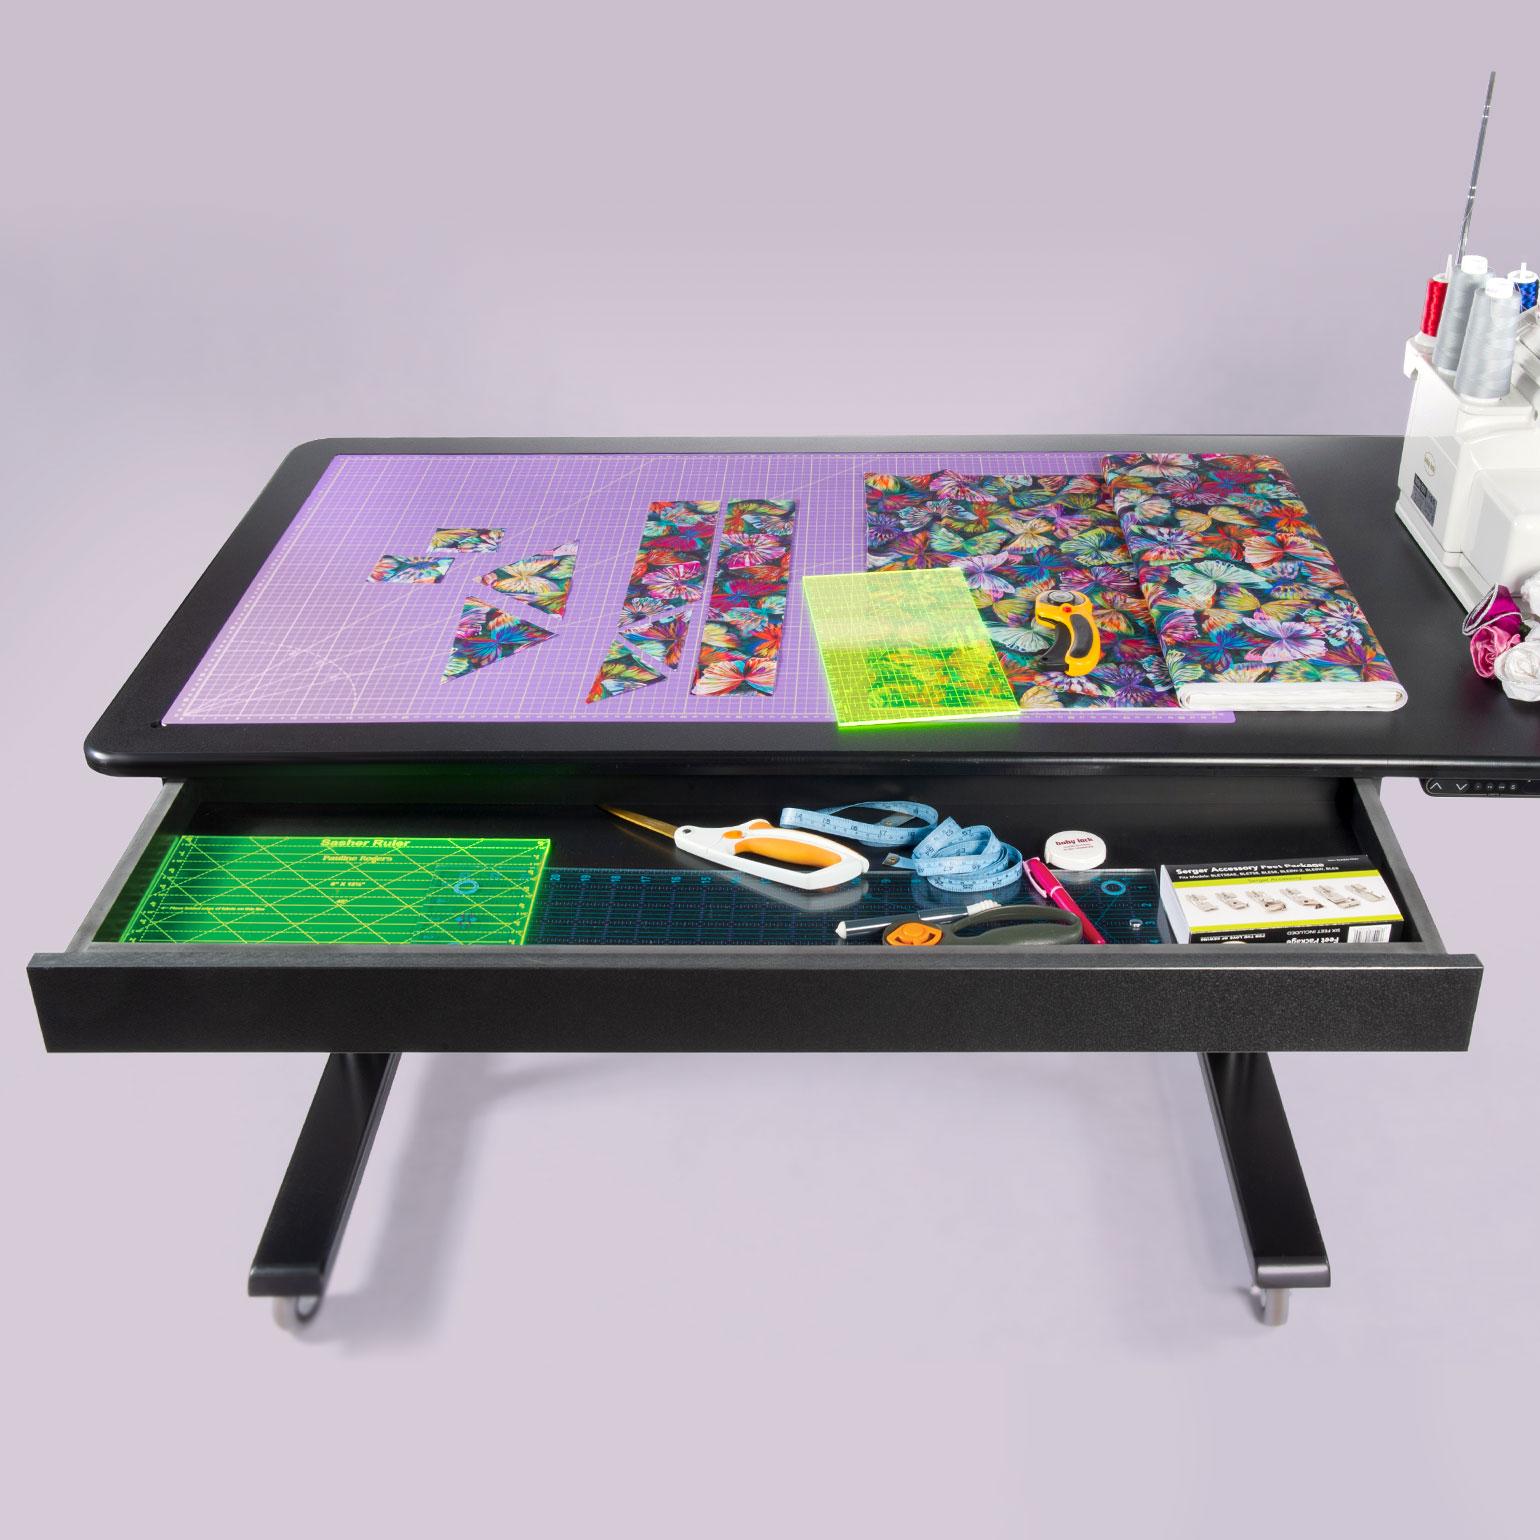 Creative Station – Adjustable Multi-Purpose Table